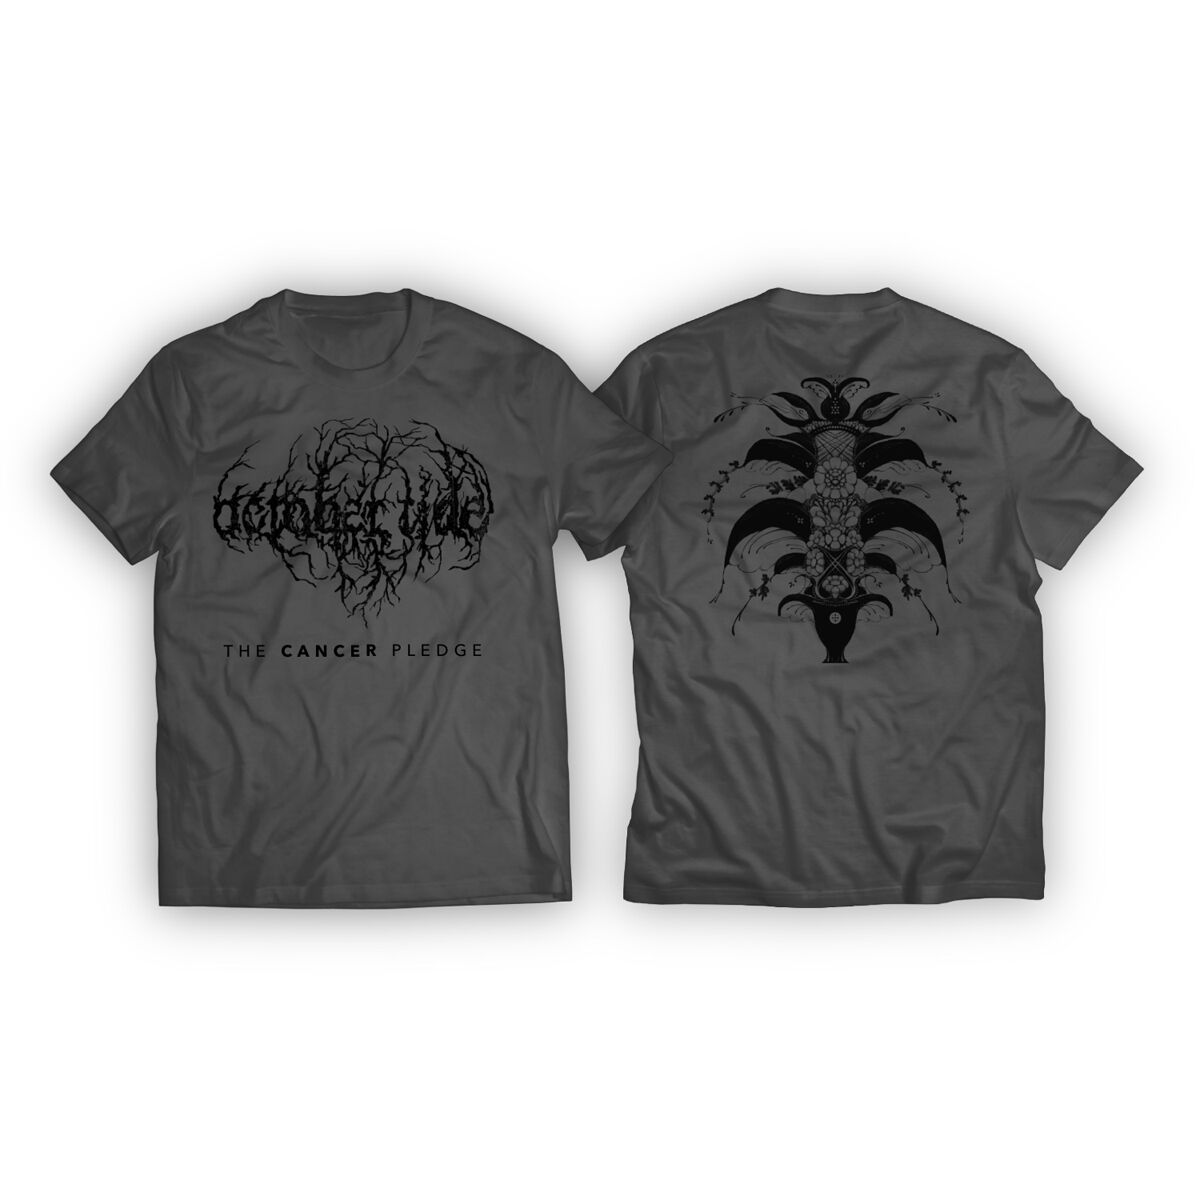 October Tide T-Shirt - The Cancer Pledge - S bis L - für Männer - Größe S - grau  - Lizenziertes Merchandise!